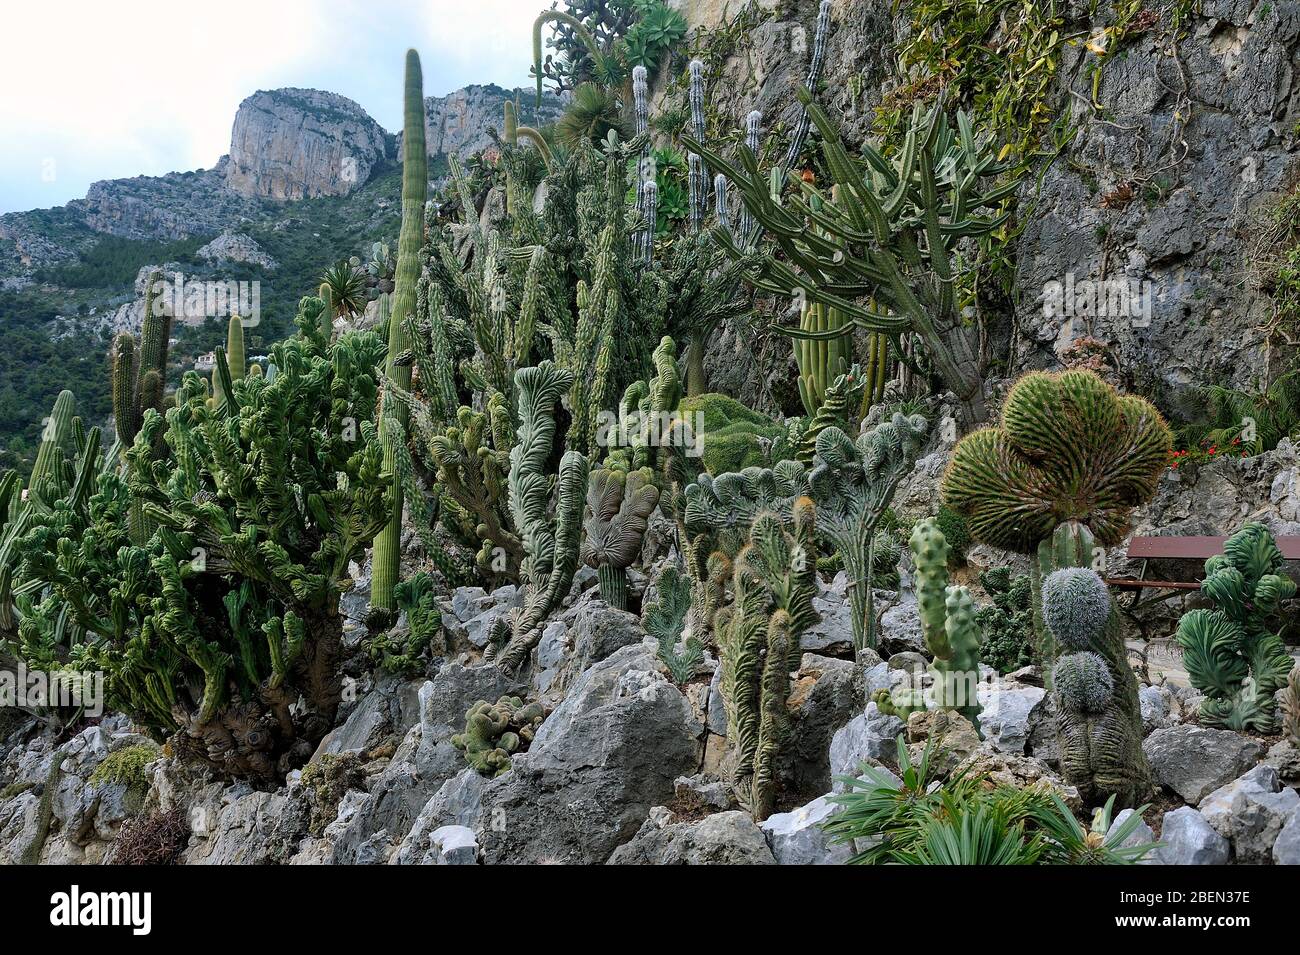 Besuchen Sie den exotischen Garten von Monaco, wo es riesige Sammlungen von Kakteen und Sukkulenten gibt Stockfoto